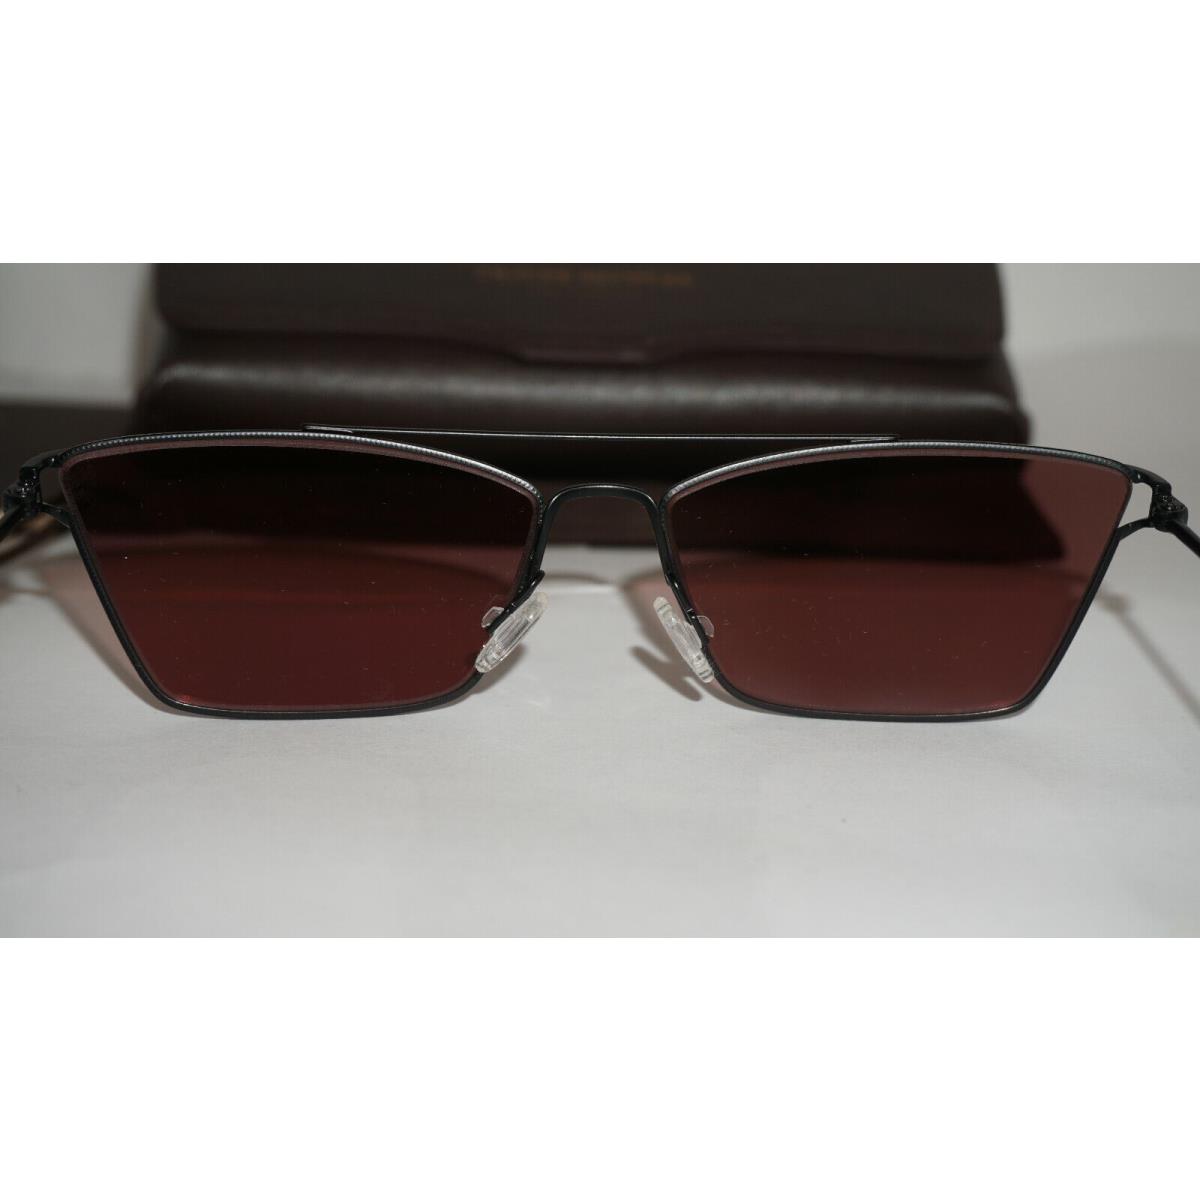 Oliver Peoples sunglasses  - Black Frame, Red Lens 8